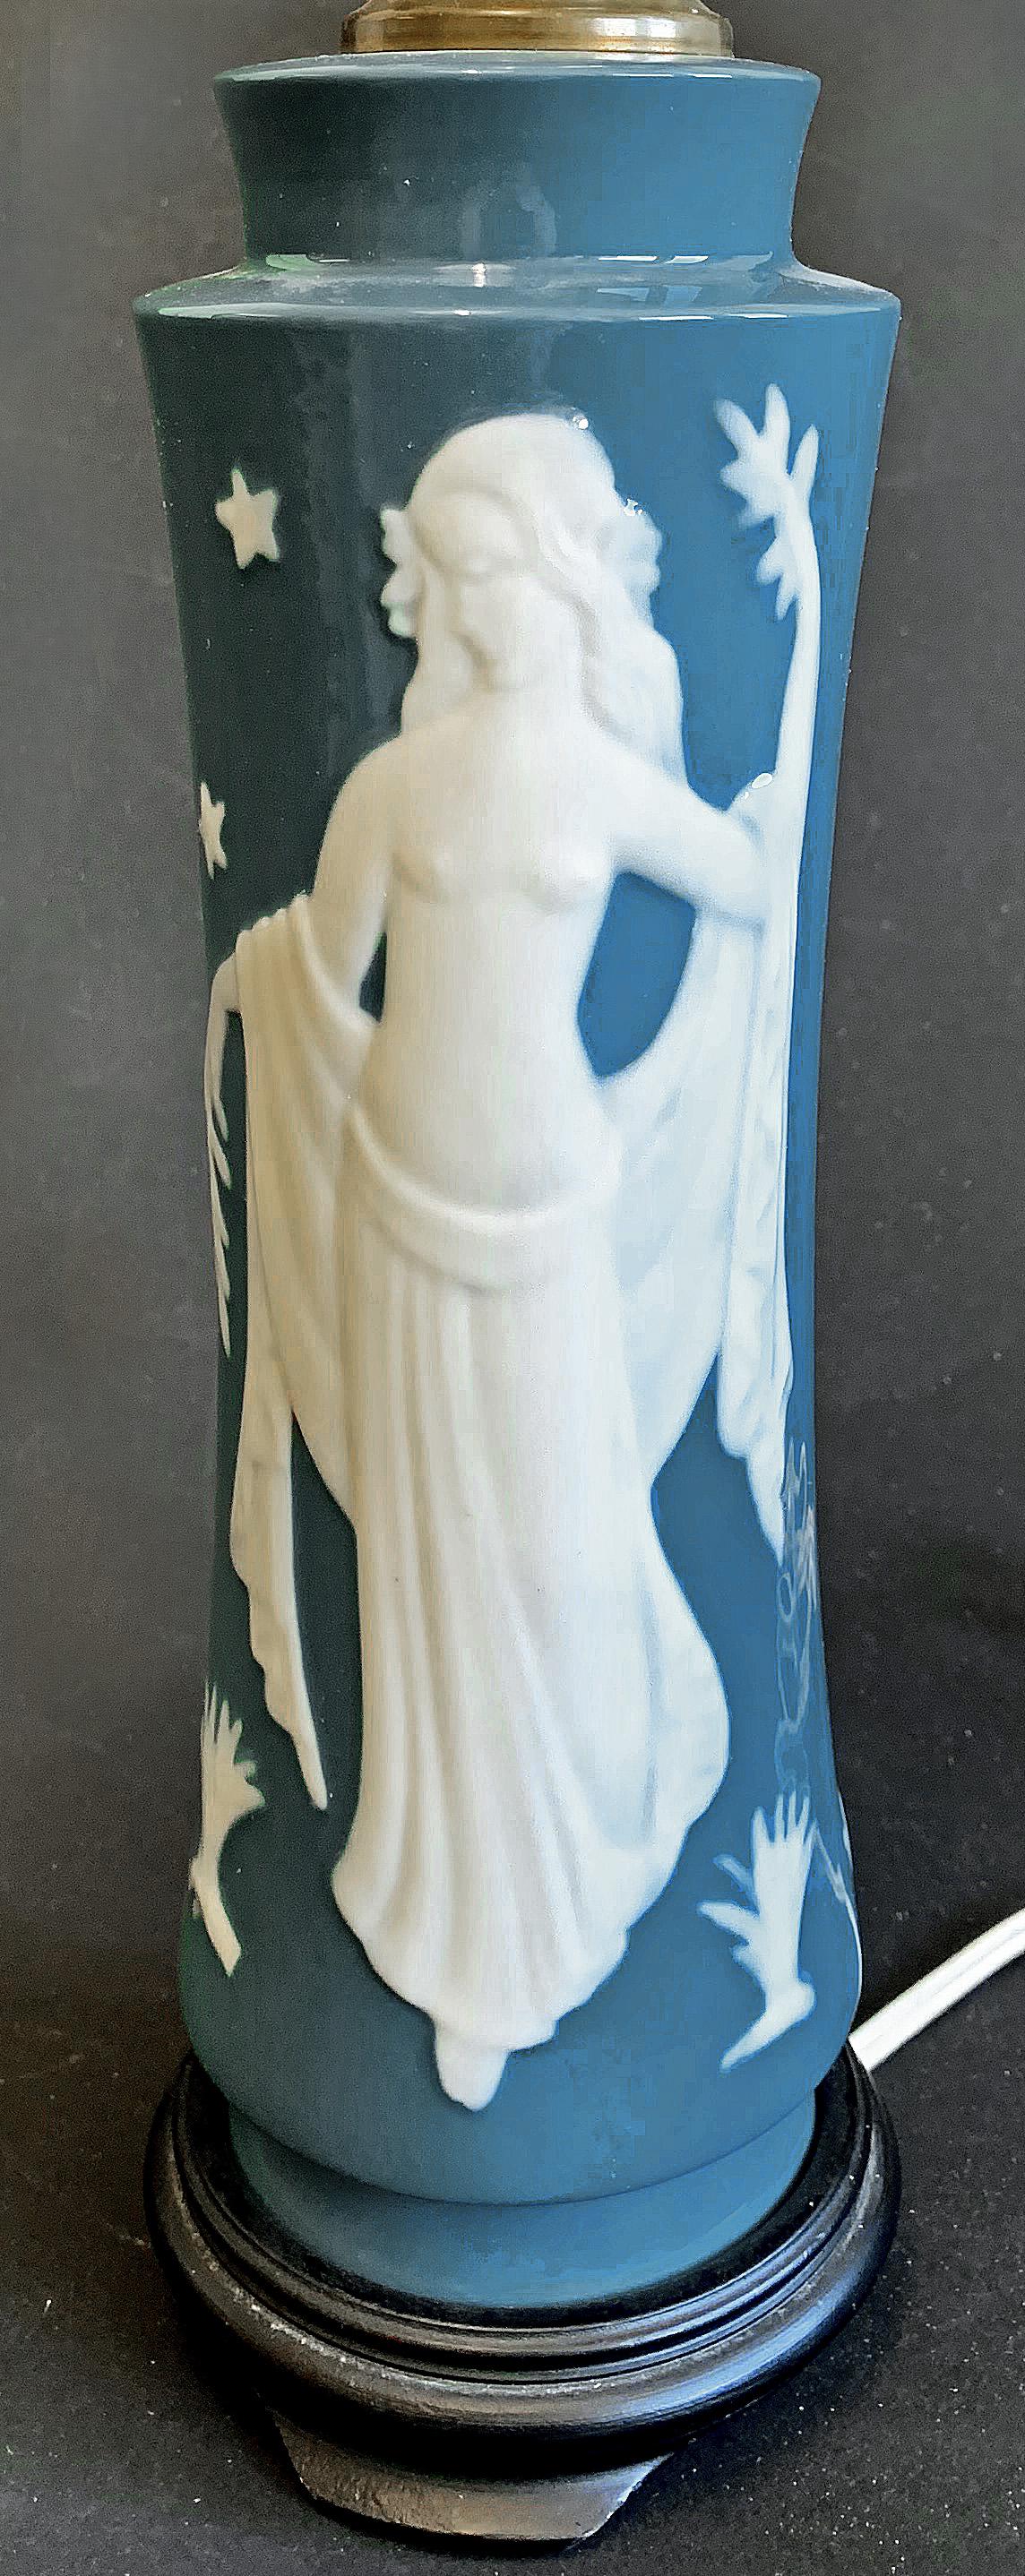 Magnifiquement sculptée et façonnée en porcelaine, dans des tons de blanc et de bleu ardoise, cette rare et belle lampe de table représente Perséphone, déesse du printemps, en bas-relief. La lampe a été fabriquée par la célèbre entreprise de